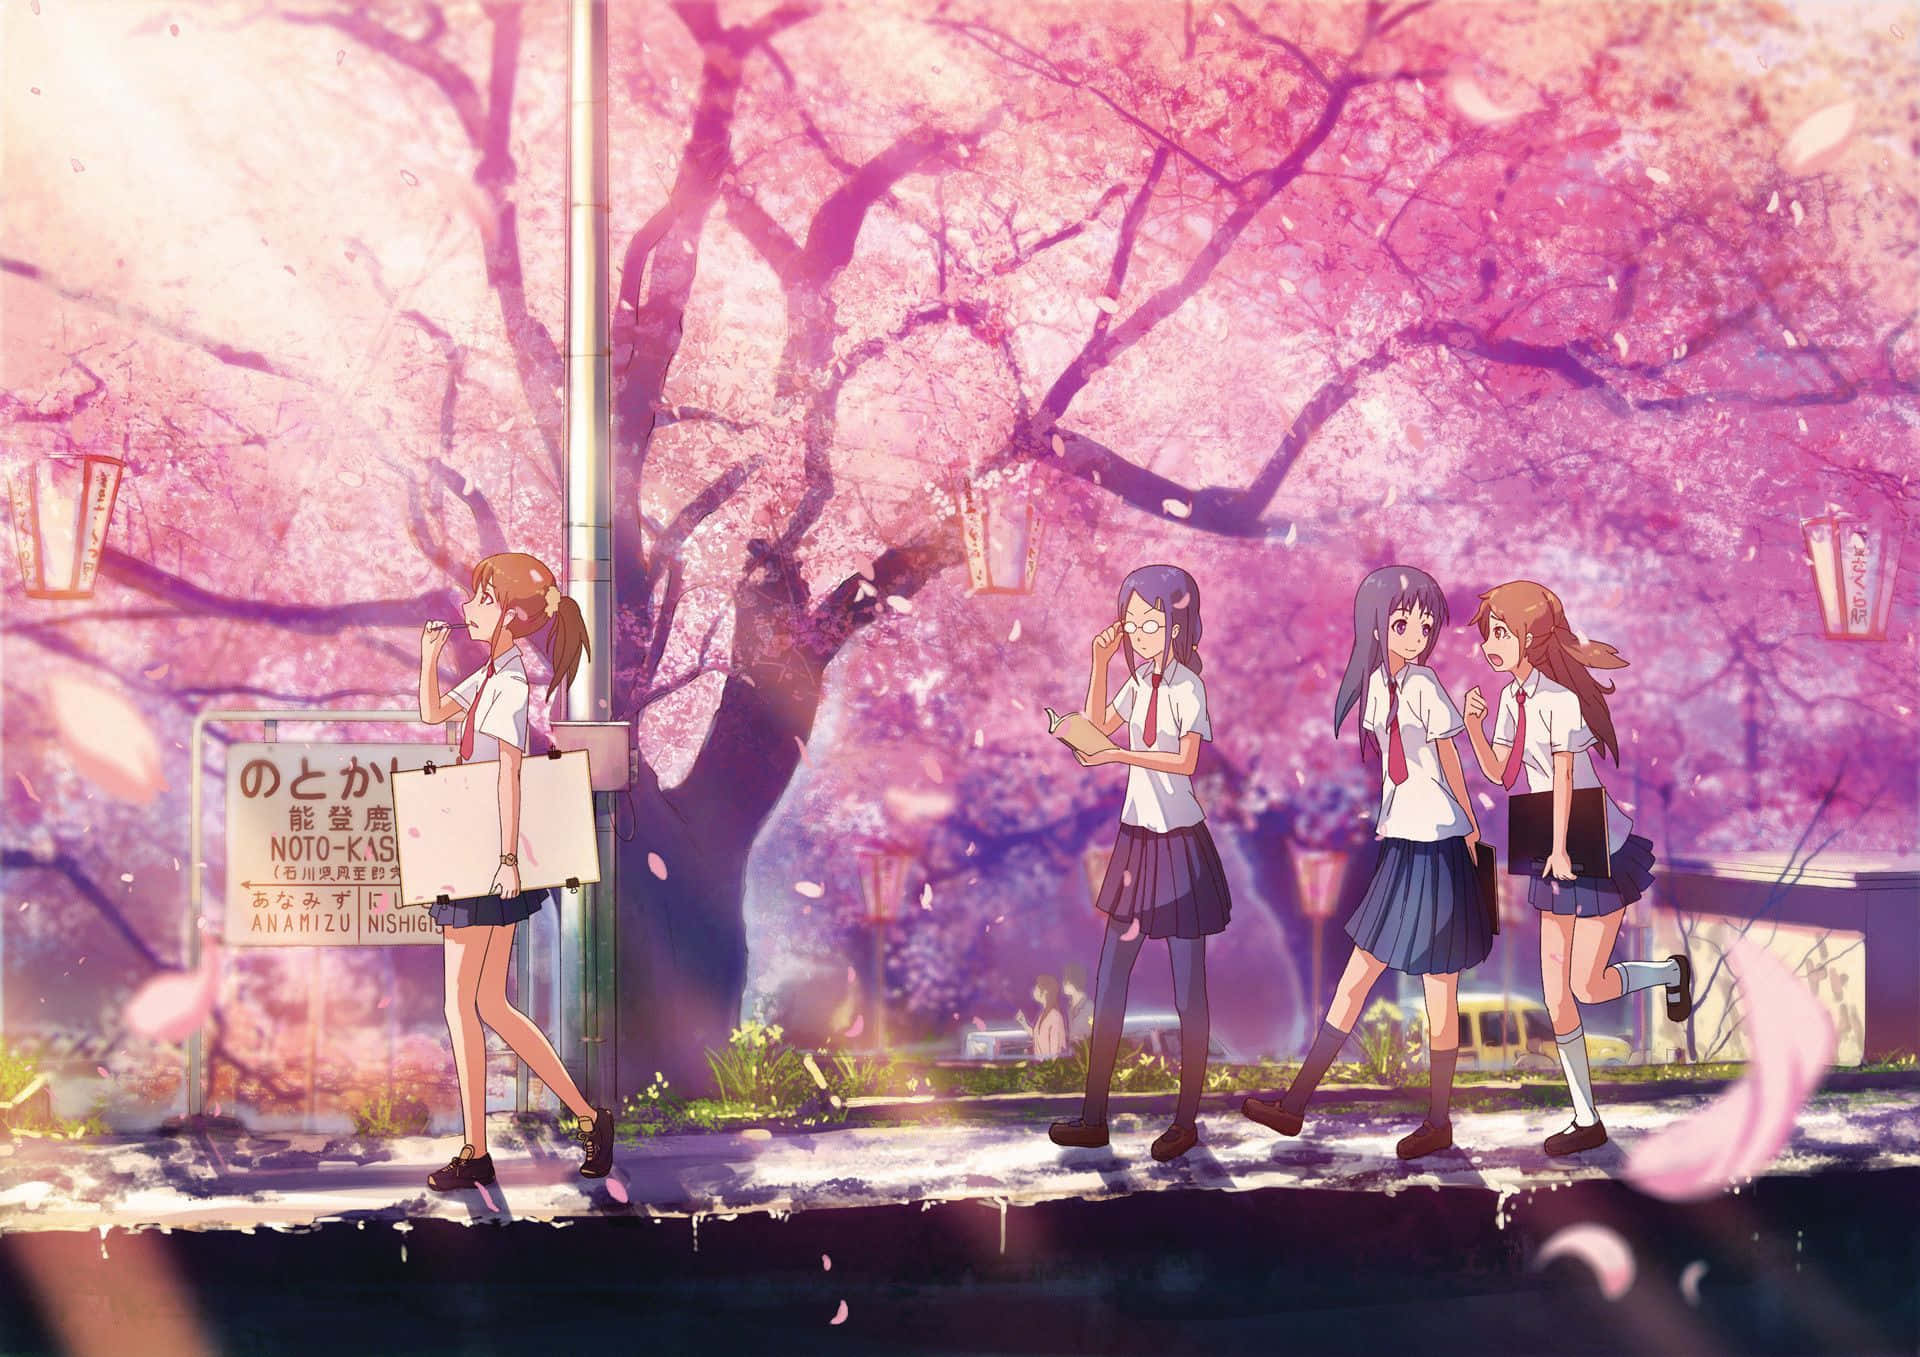 Sakura Anime School Girls Digital Illustration Wallpaper